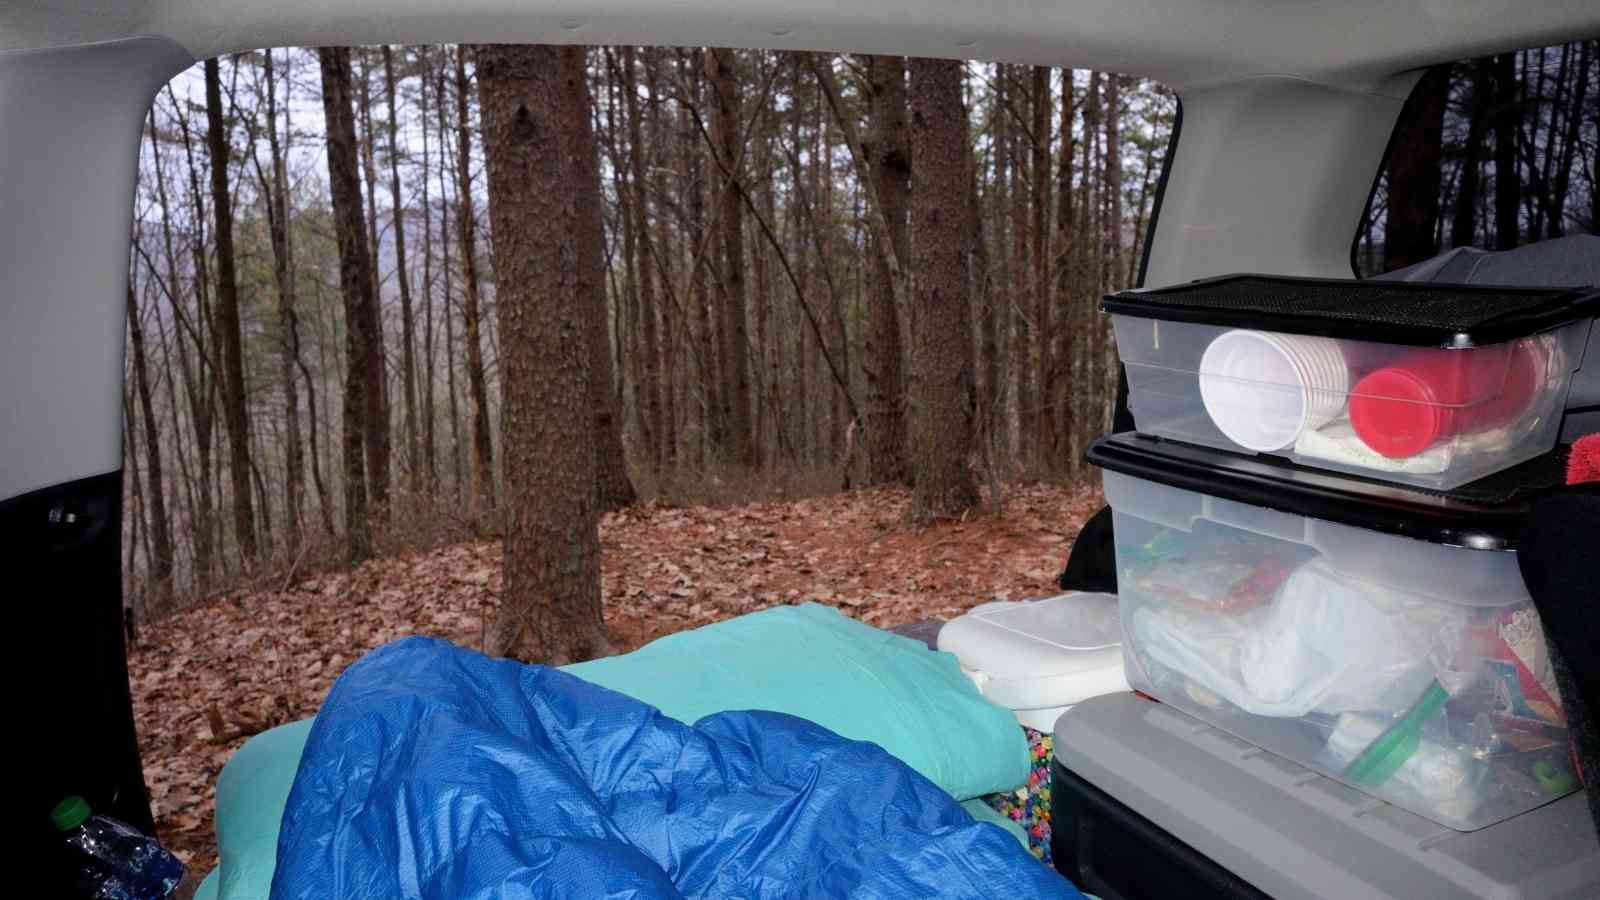 Camping pillow